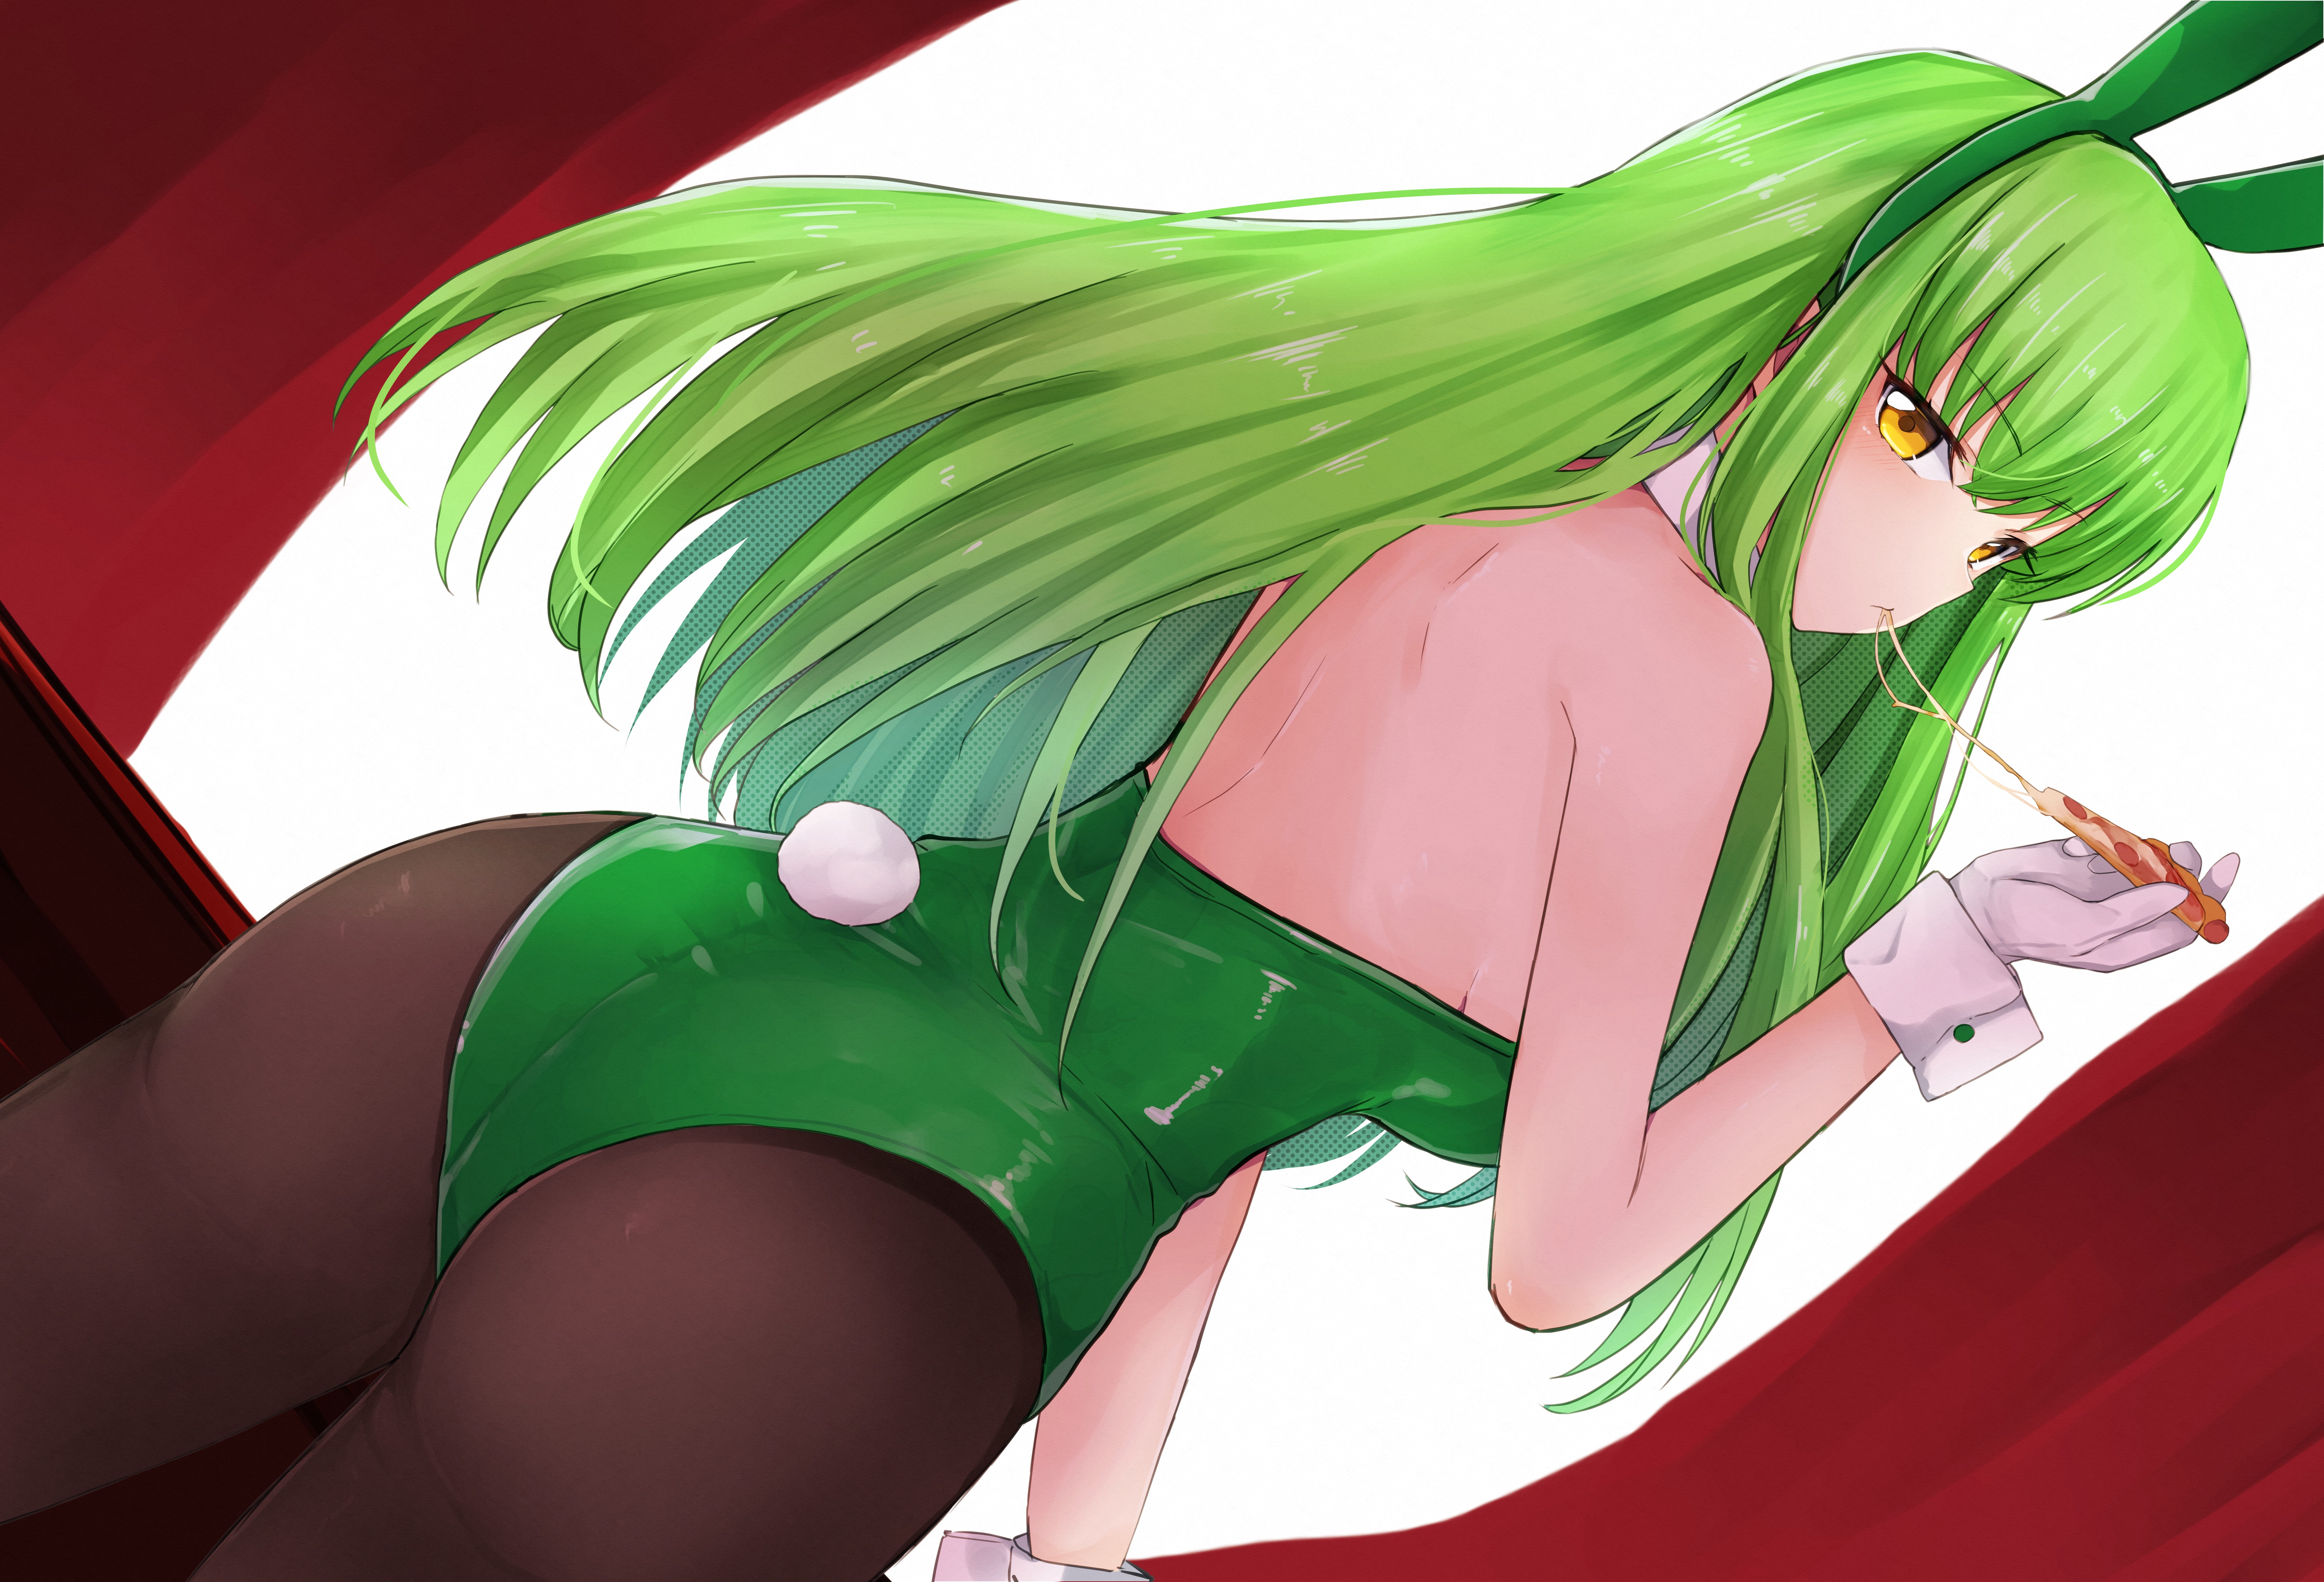 Anime Anime Girls Code Geass C C Code Geass Long Hair Green Hair Super Robot Taisen Artwork Digital  6872x4677